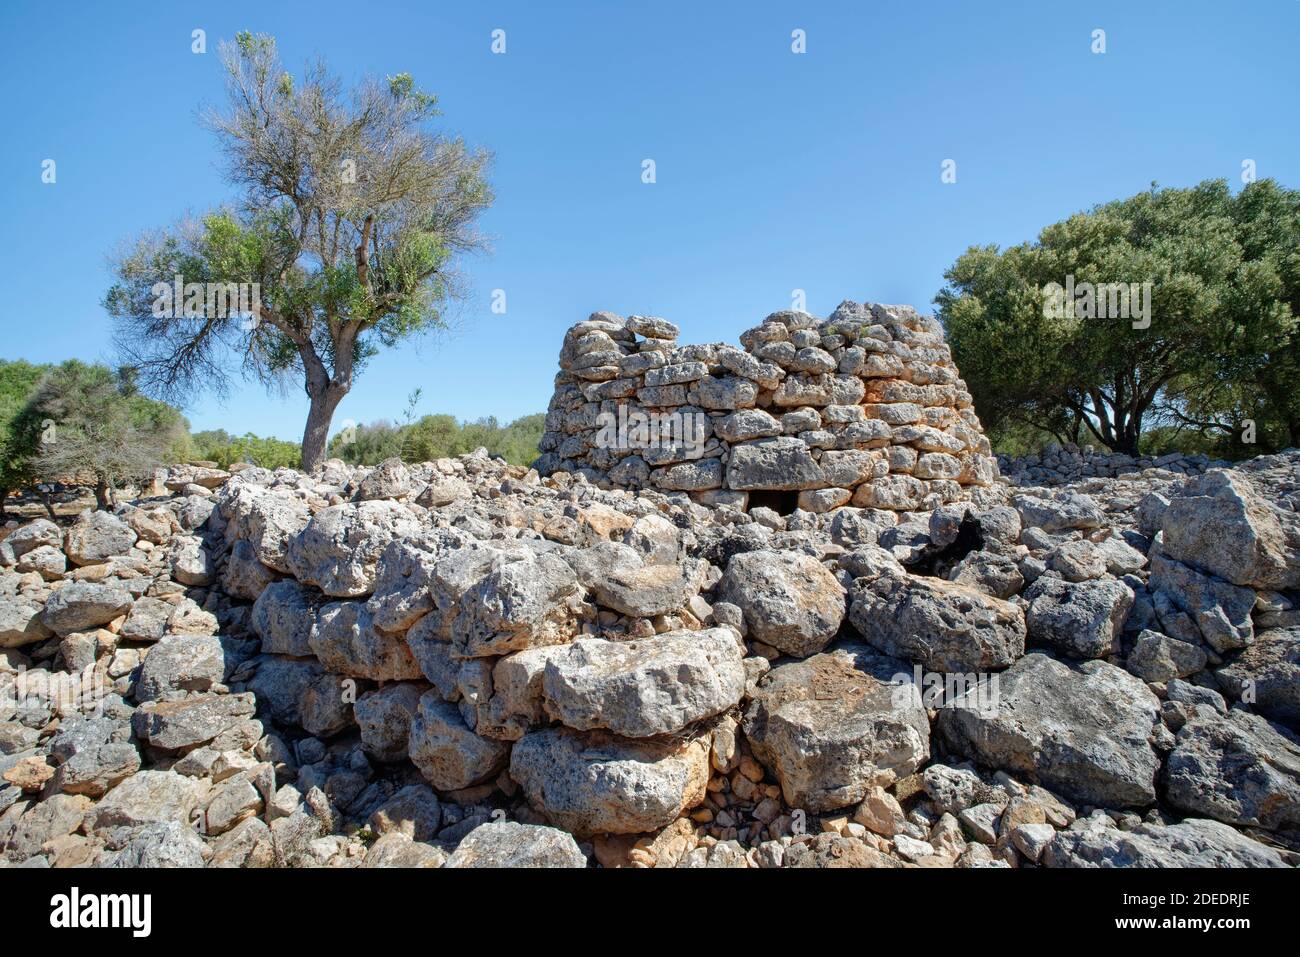 Bronzezeit "Talaiot" Grabkammer in Capocorb Vell, eine Siedlung von der alten talaiotischen Kultur gebaut, Cala Pi, Mallorca. Stockfoto